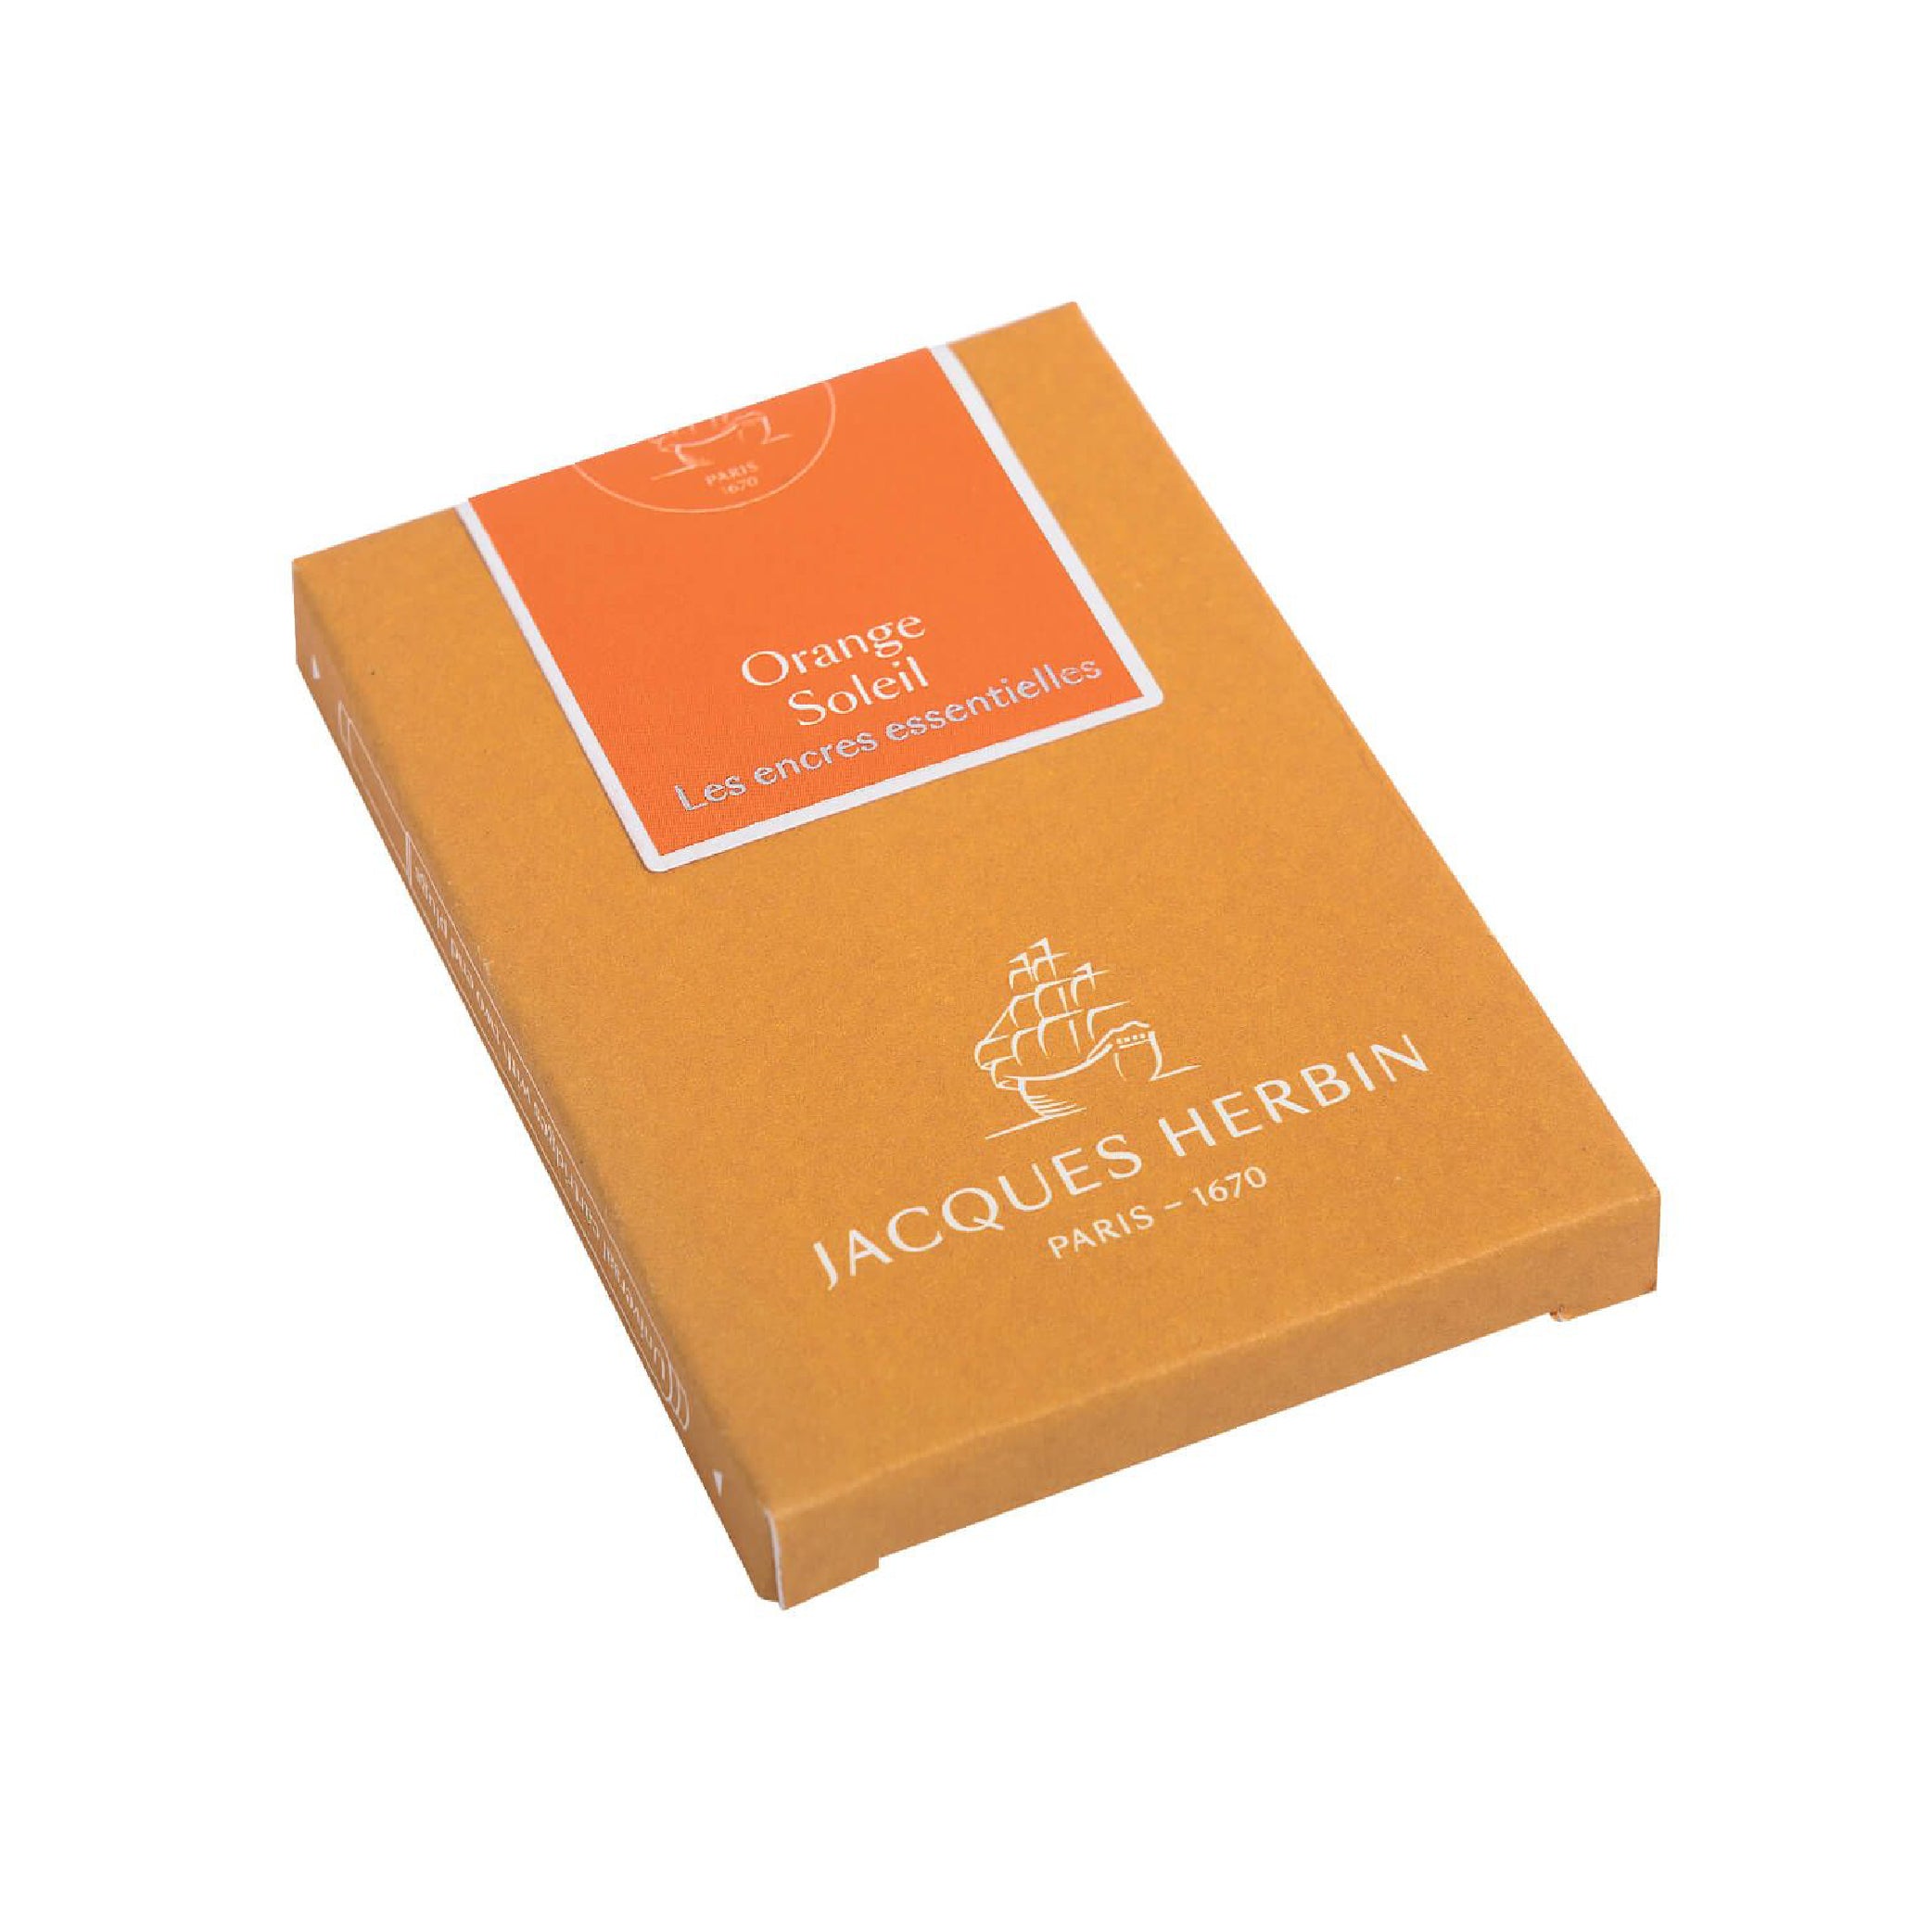 JACQUES HERBIN Essentials Cartridges 7s Orange Soleil Default Title